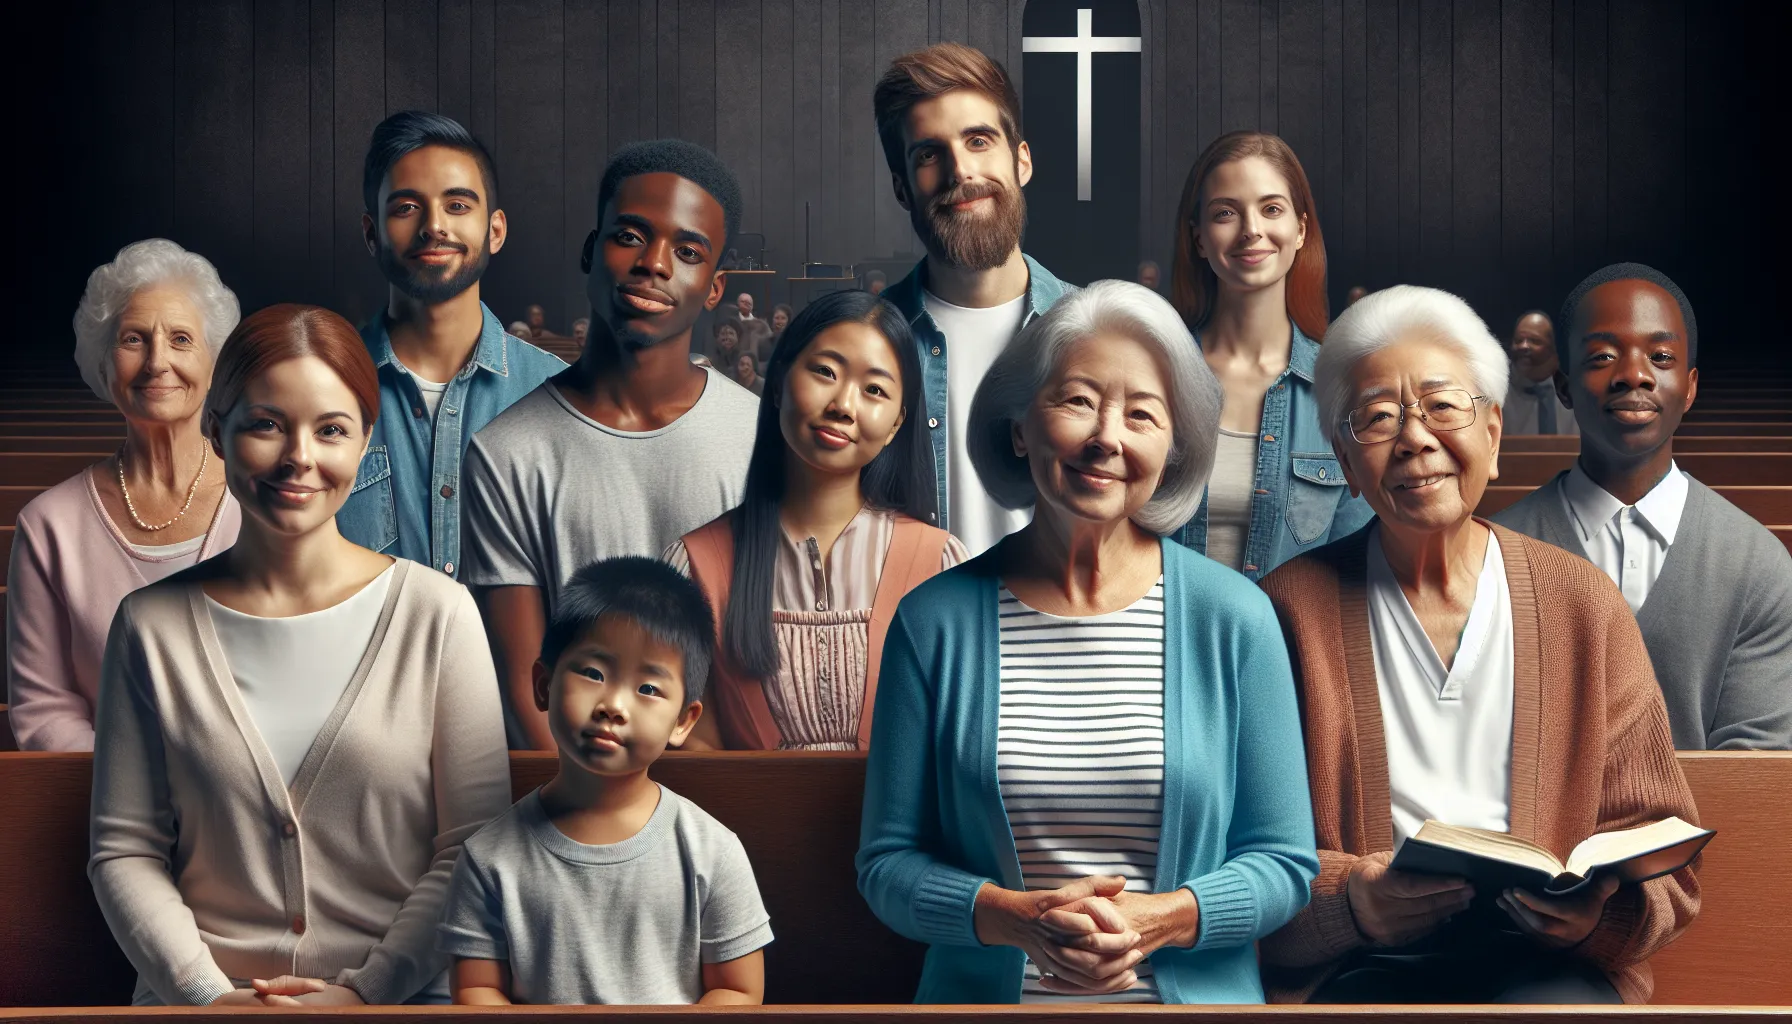 Imagen representativa de una iglesia con personas de diferentes etnias y edades congregadas